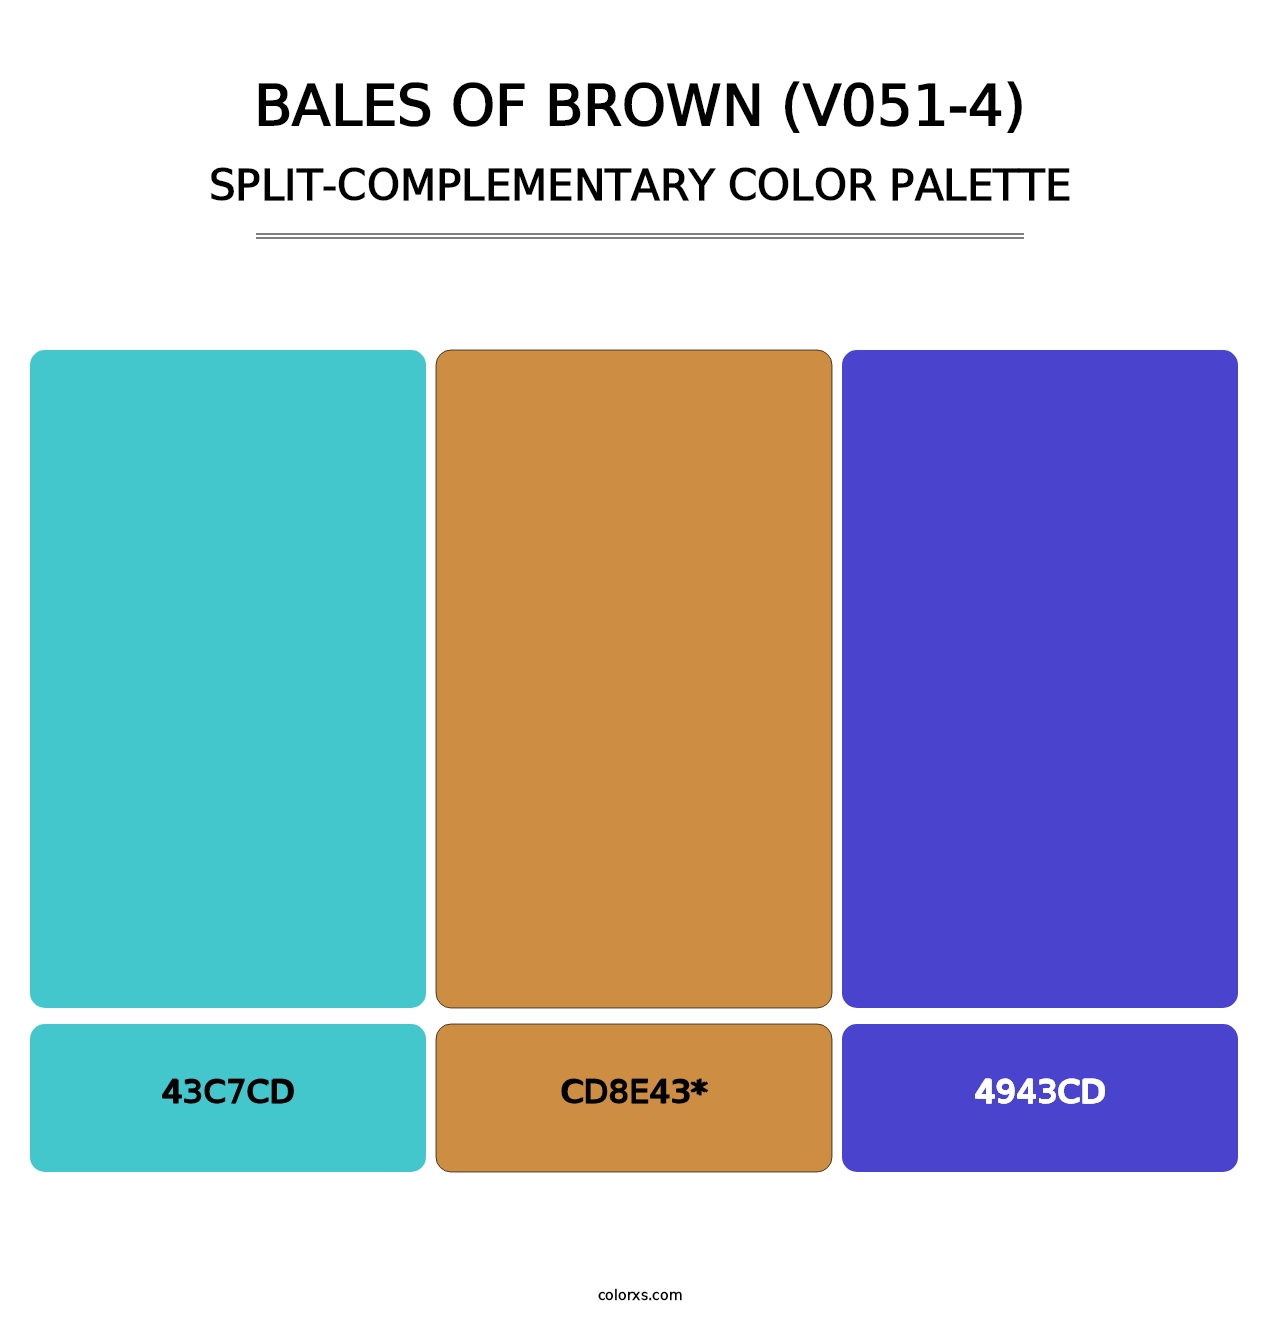 Bales of Brown (V051-4) - Split-Complementary Color Palette